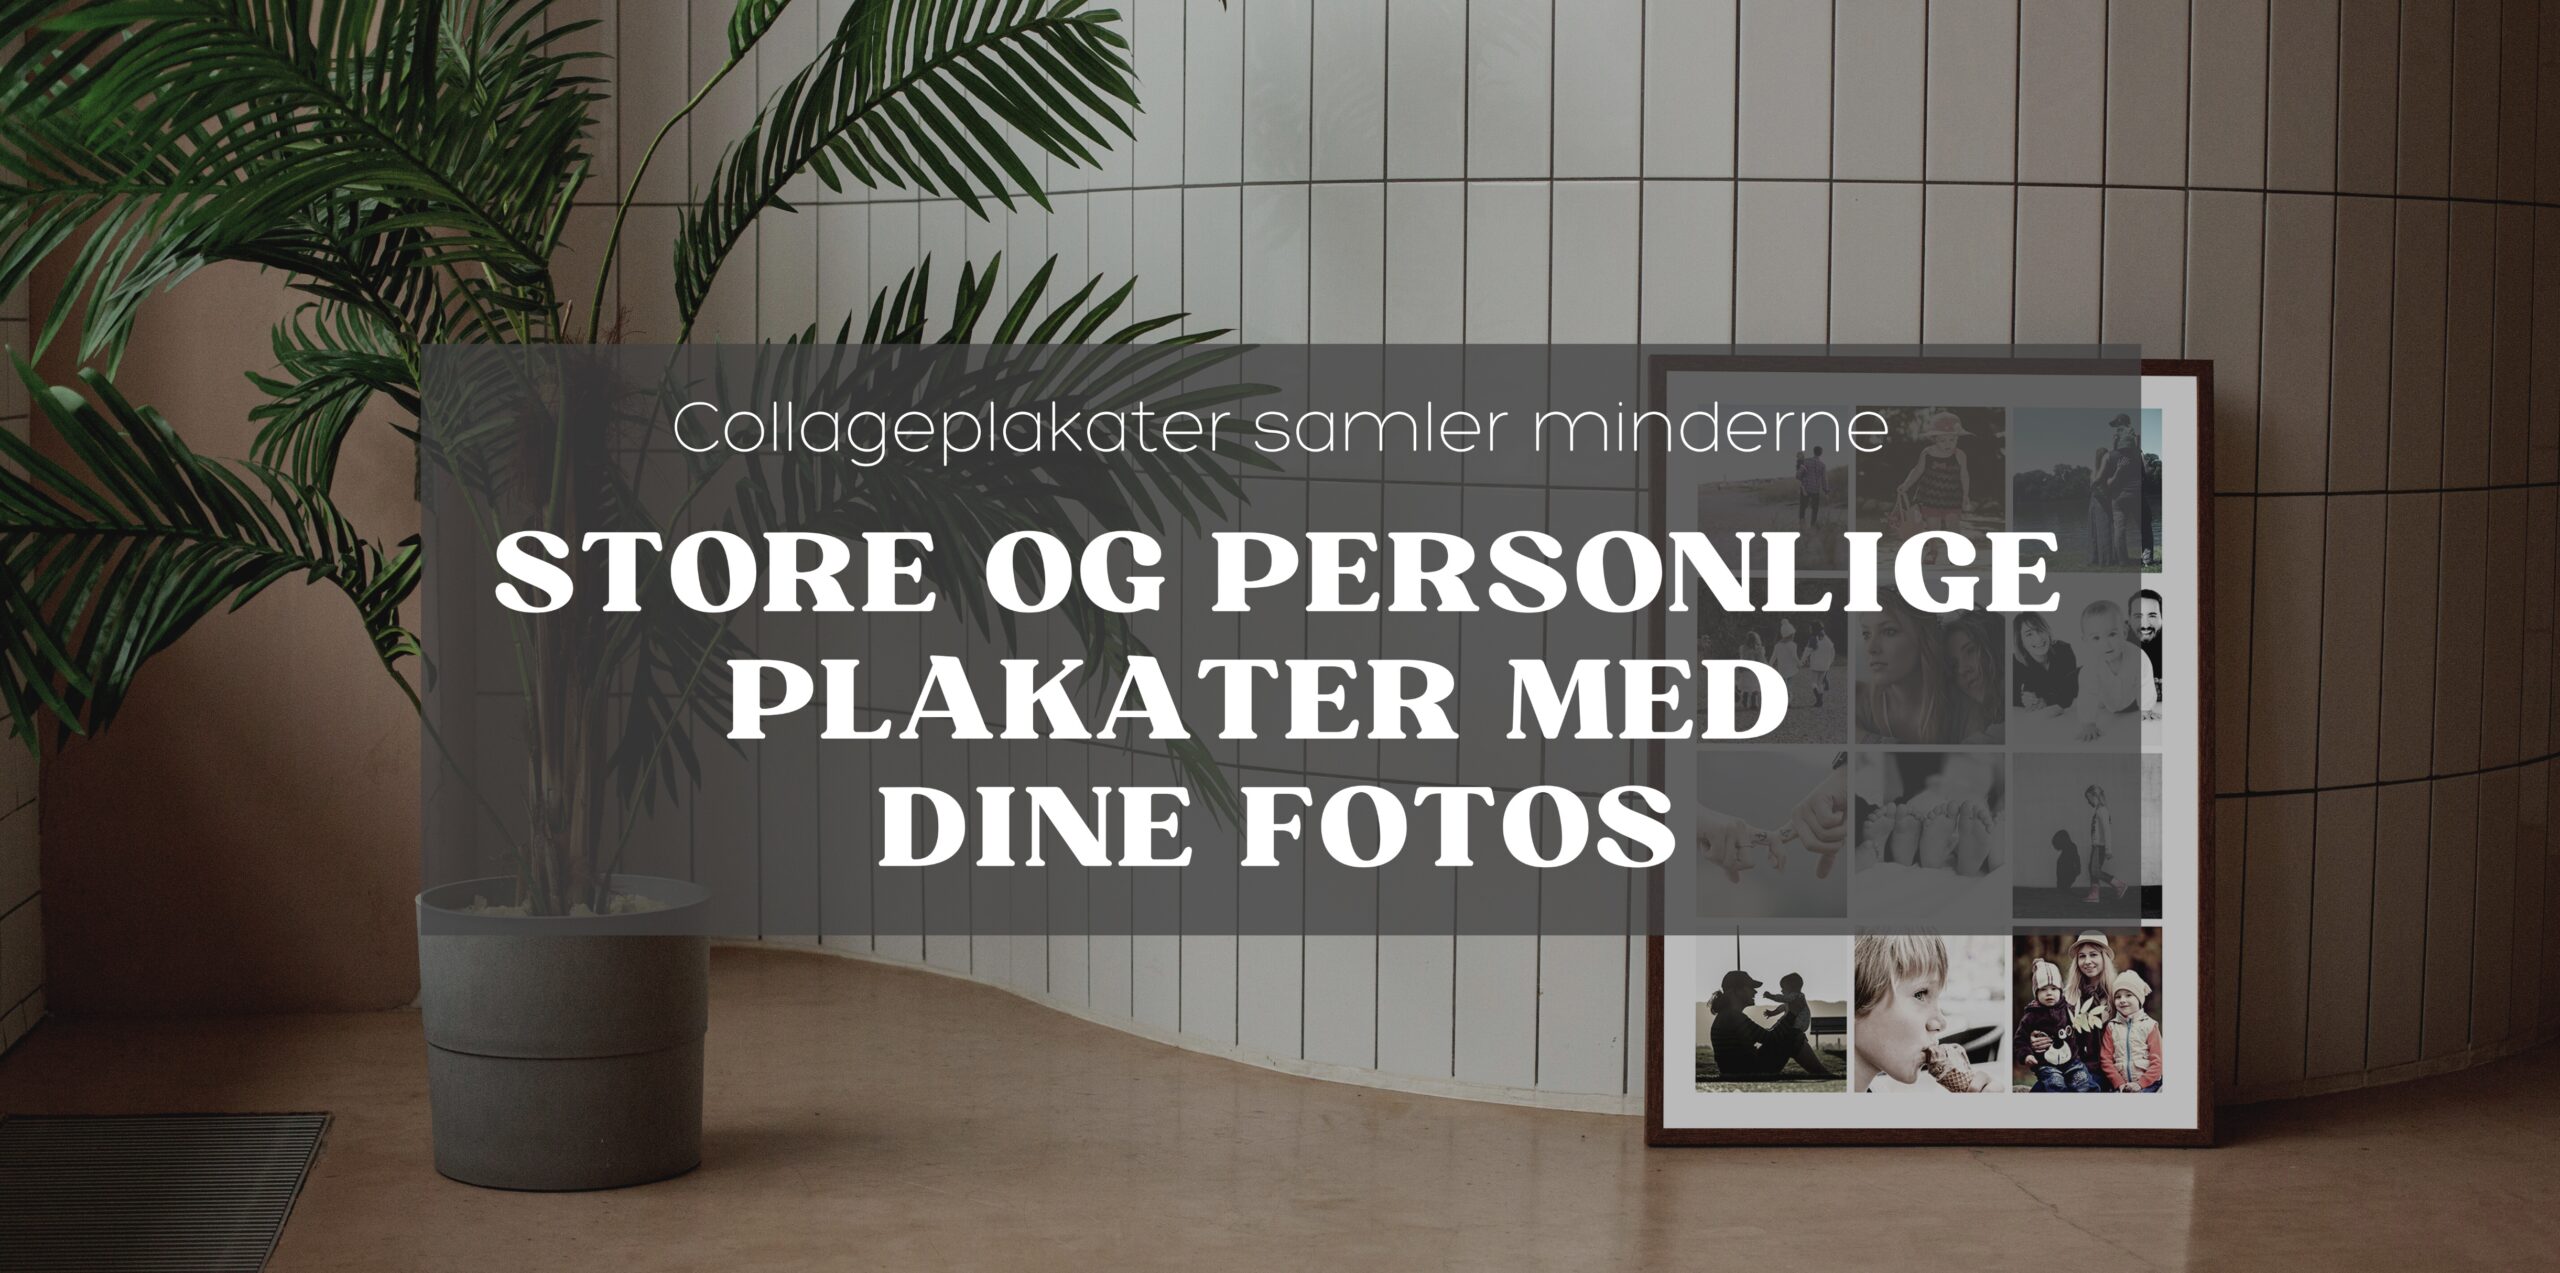 Store og personlige plakater med dine fotos fra Plakattrykkeren.dk